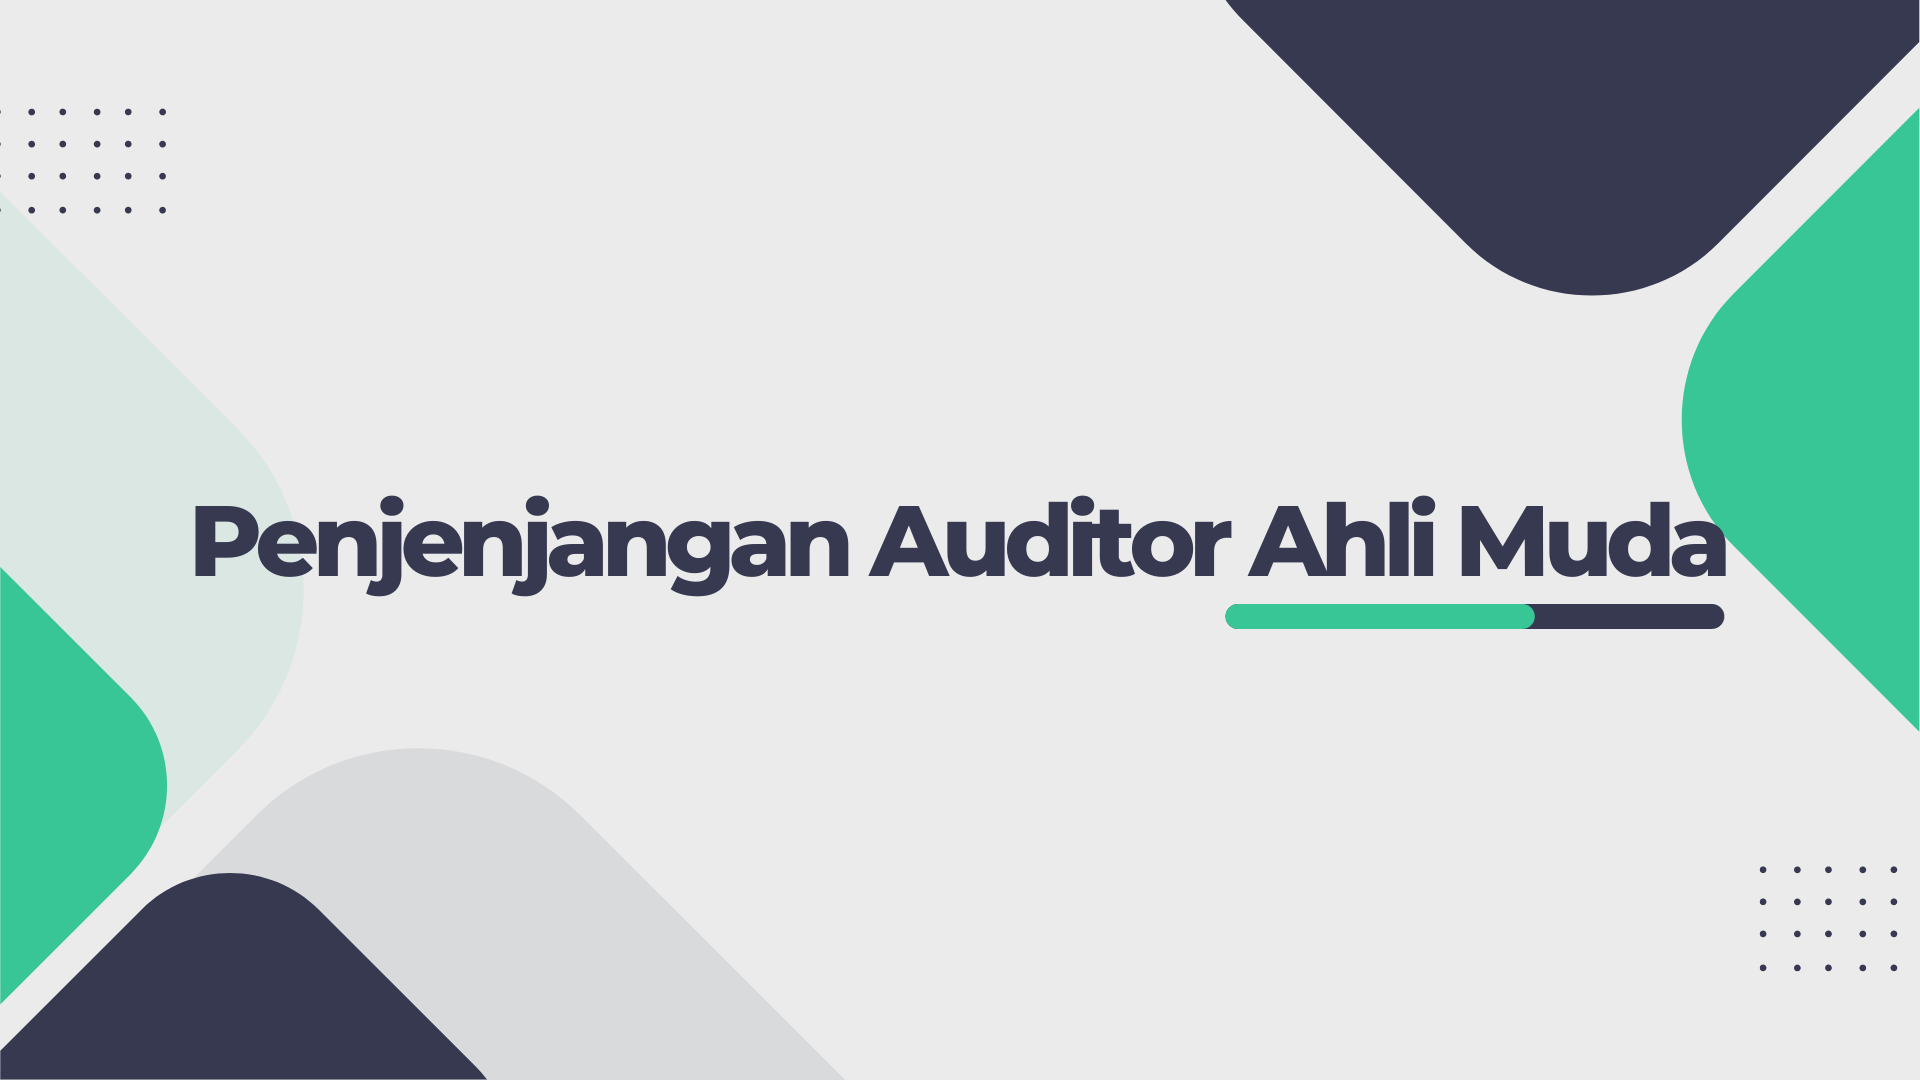 Penjenjangan Auditor Ahli Muda APIP | 0445